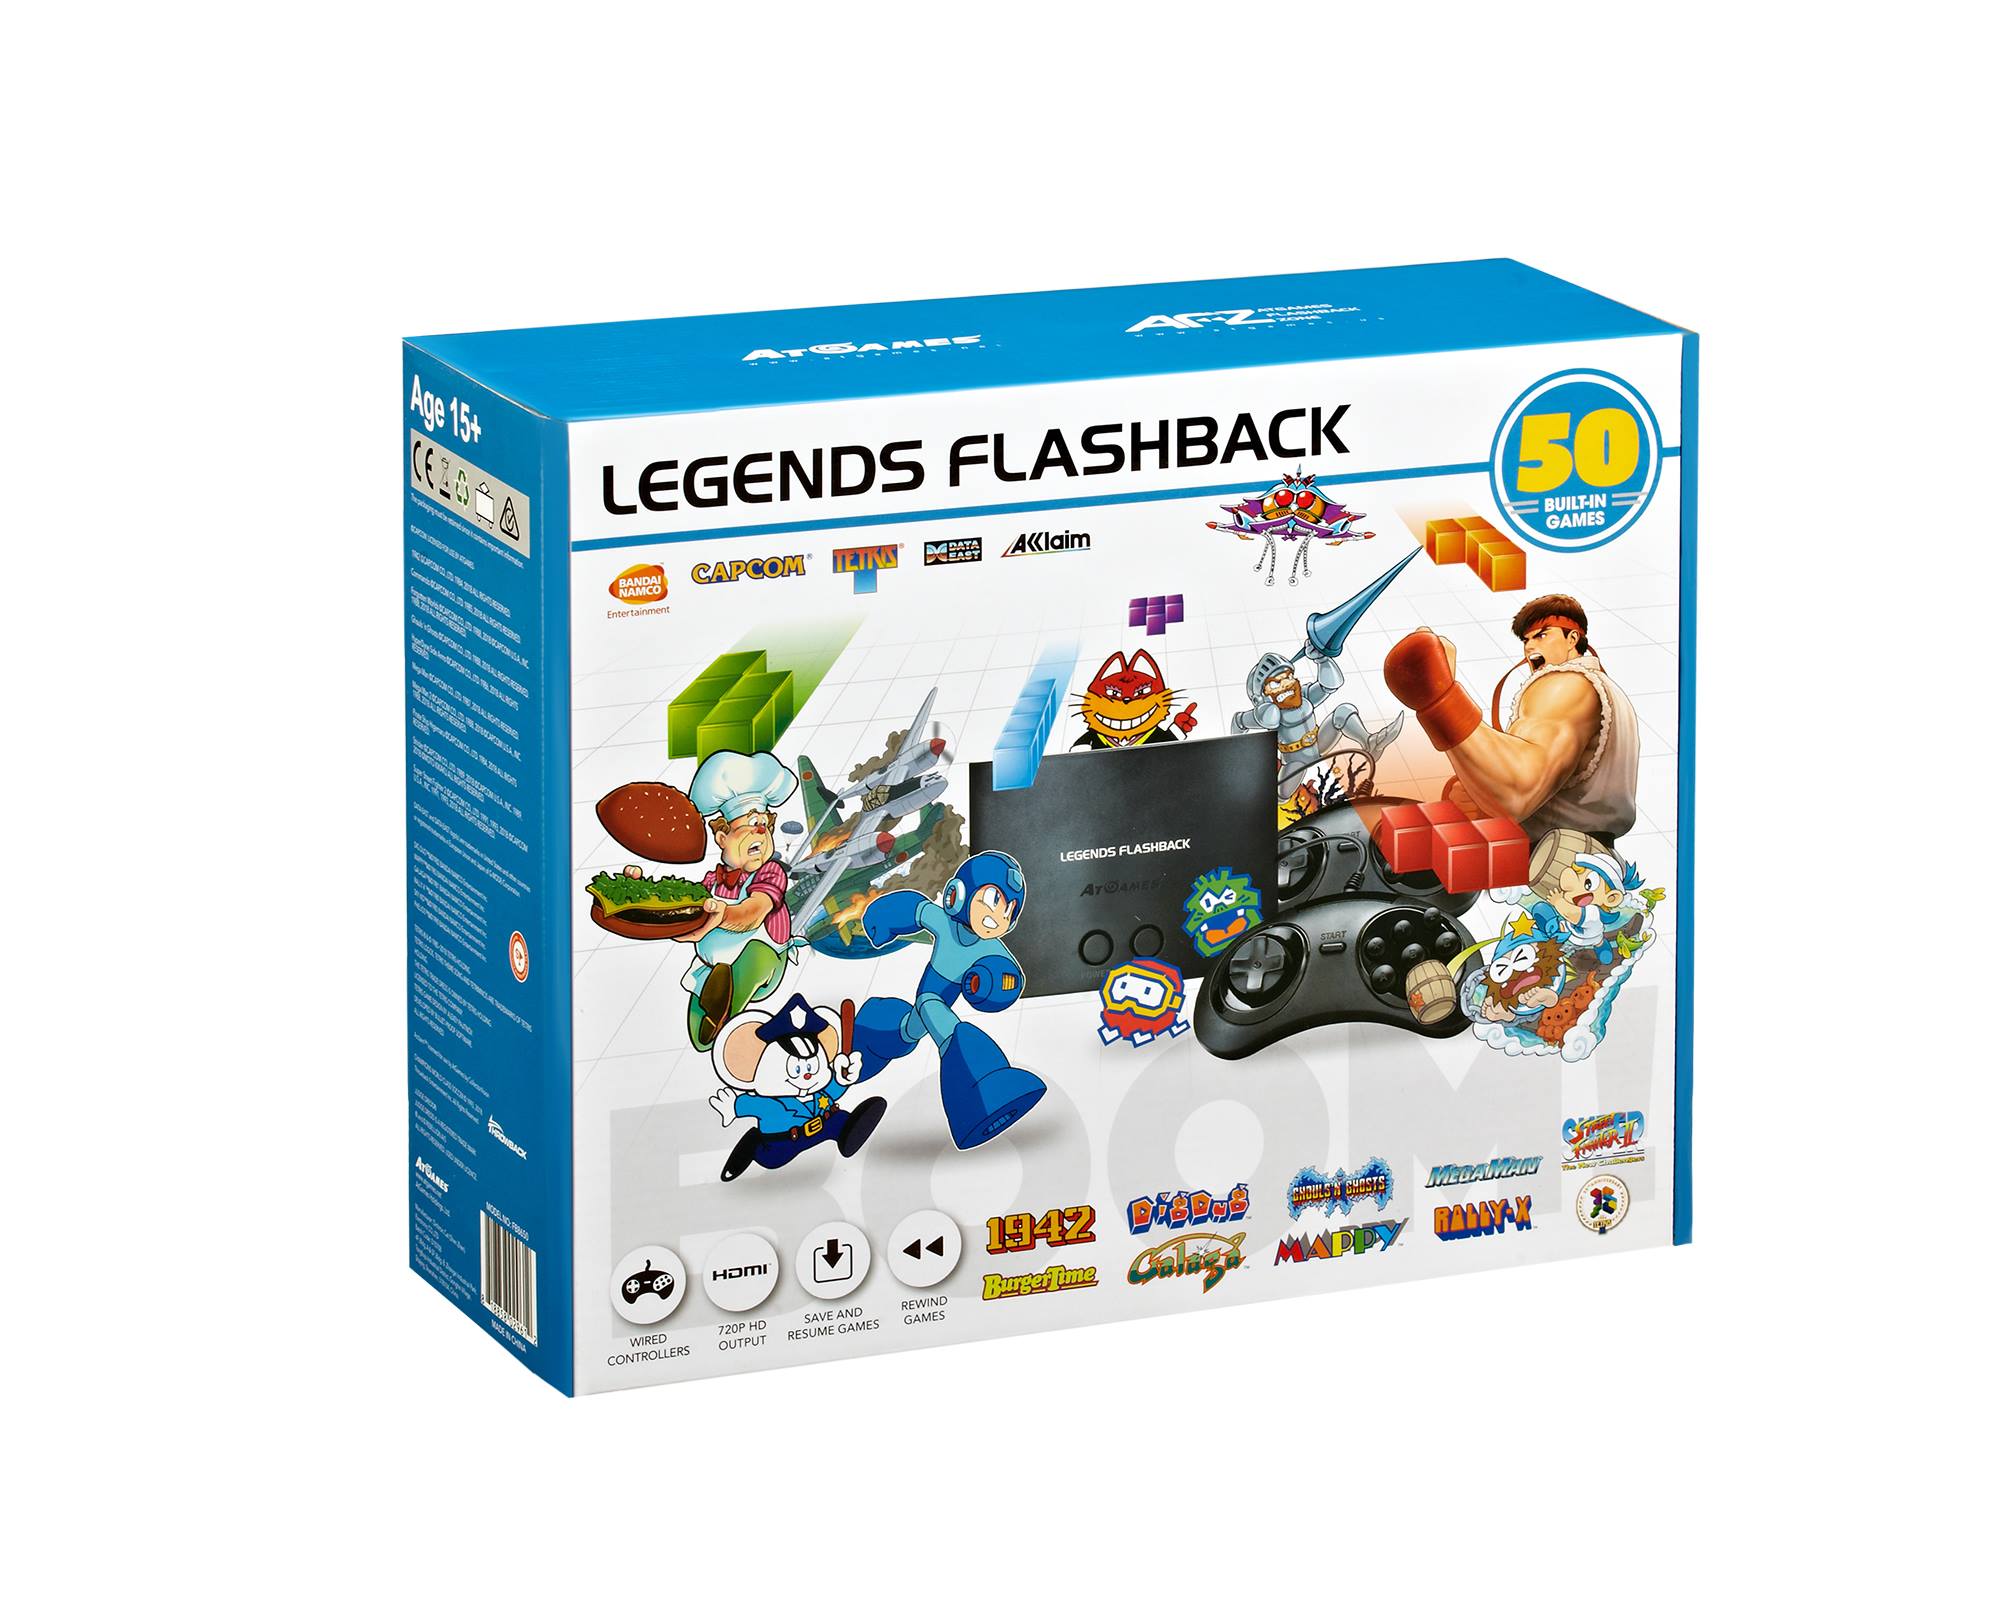 AtGames announces Legends Flashback console